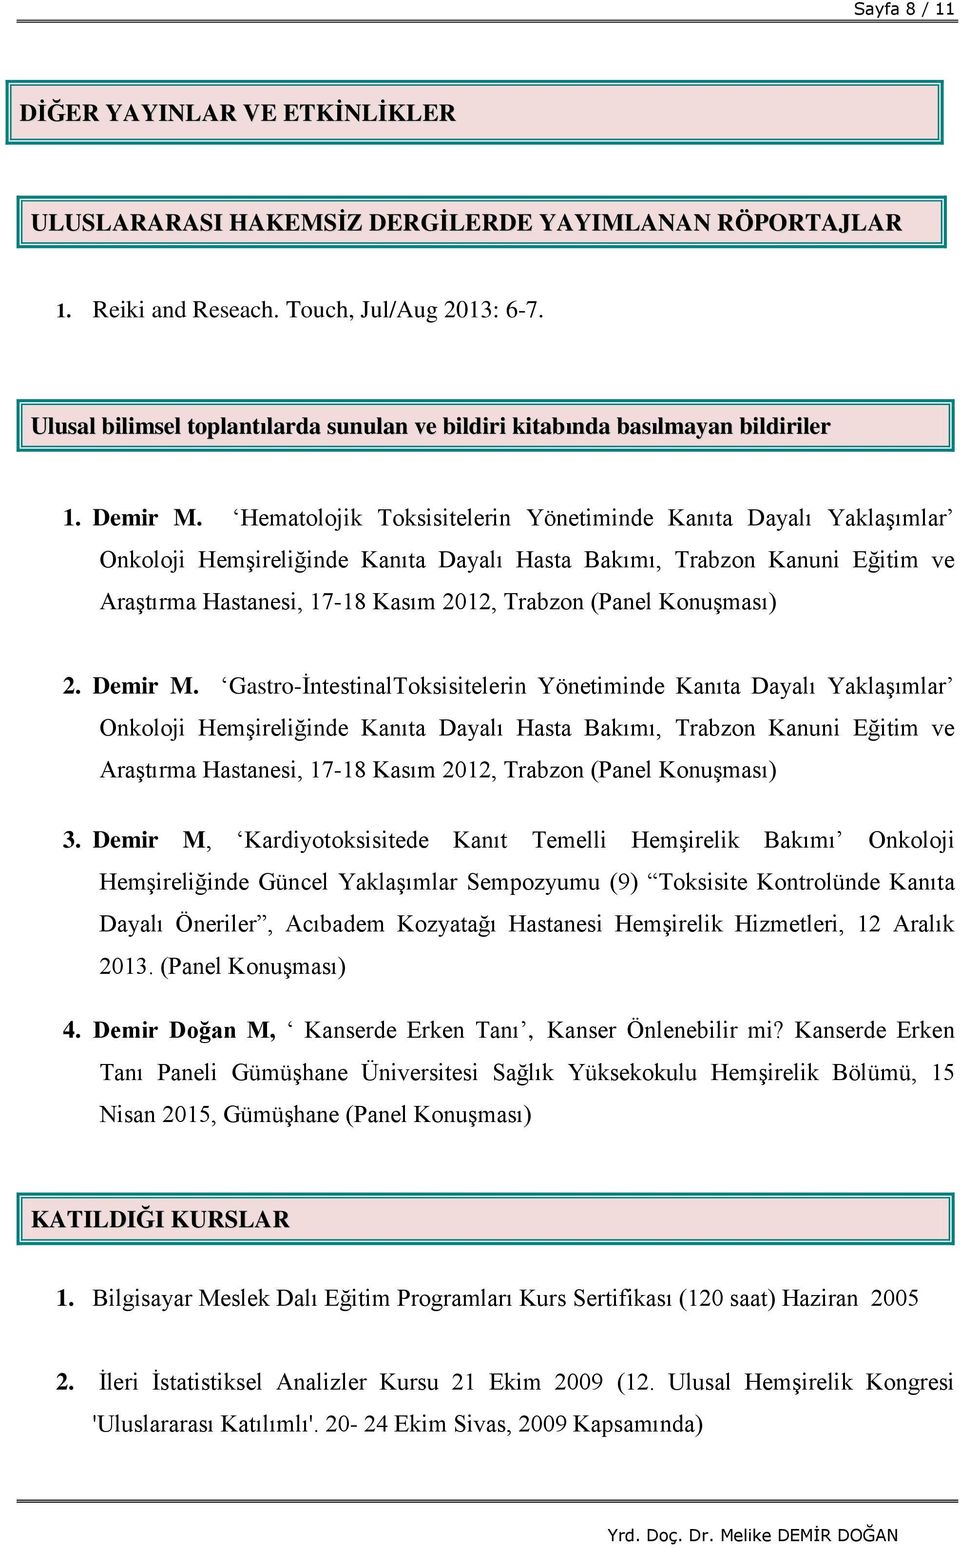 Hematolojik Toksisitelerin Yönetiminde Kanıta Dayalı Yaklaşımlar Onkoloji Hemşireliğinde Kanıta Dayalı Hasta Bakımı, Trabzon Kanuni Eğitim ve Araştırma Hastanesi, 17-18 Kasım 2012, Trabzon (Panel